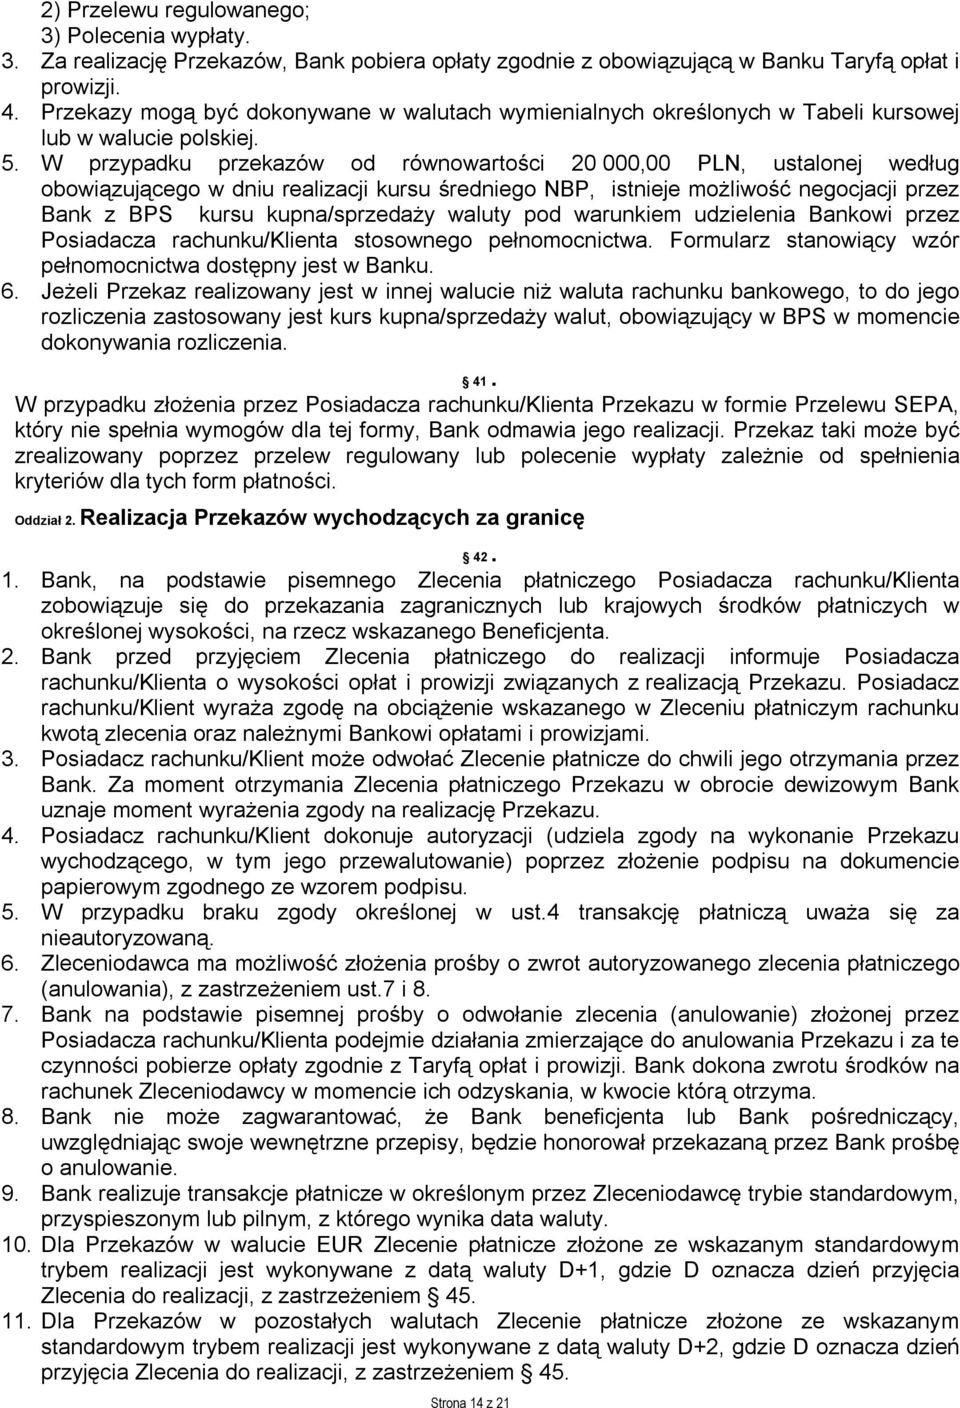 W przypadku przekazów od równowartości 20 000,00 PLN, ustalonej według obowiązującego w dniu realizacji kursu średniego NBP, istnieje możliwość negocjacji przez Bank z BPS kursu kupna/sprzedaży